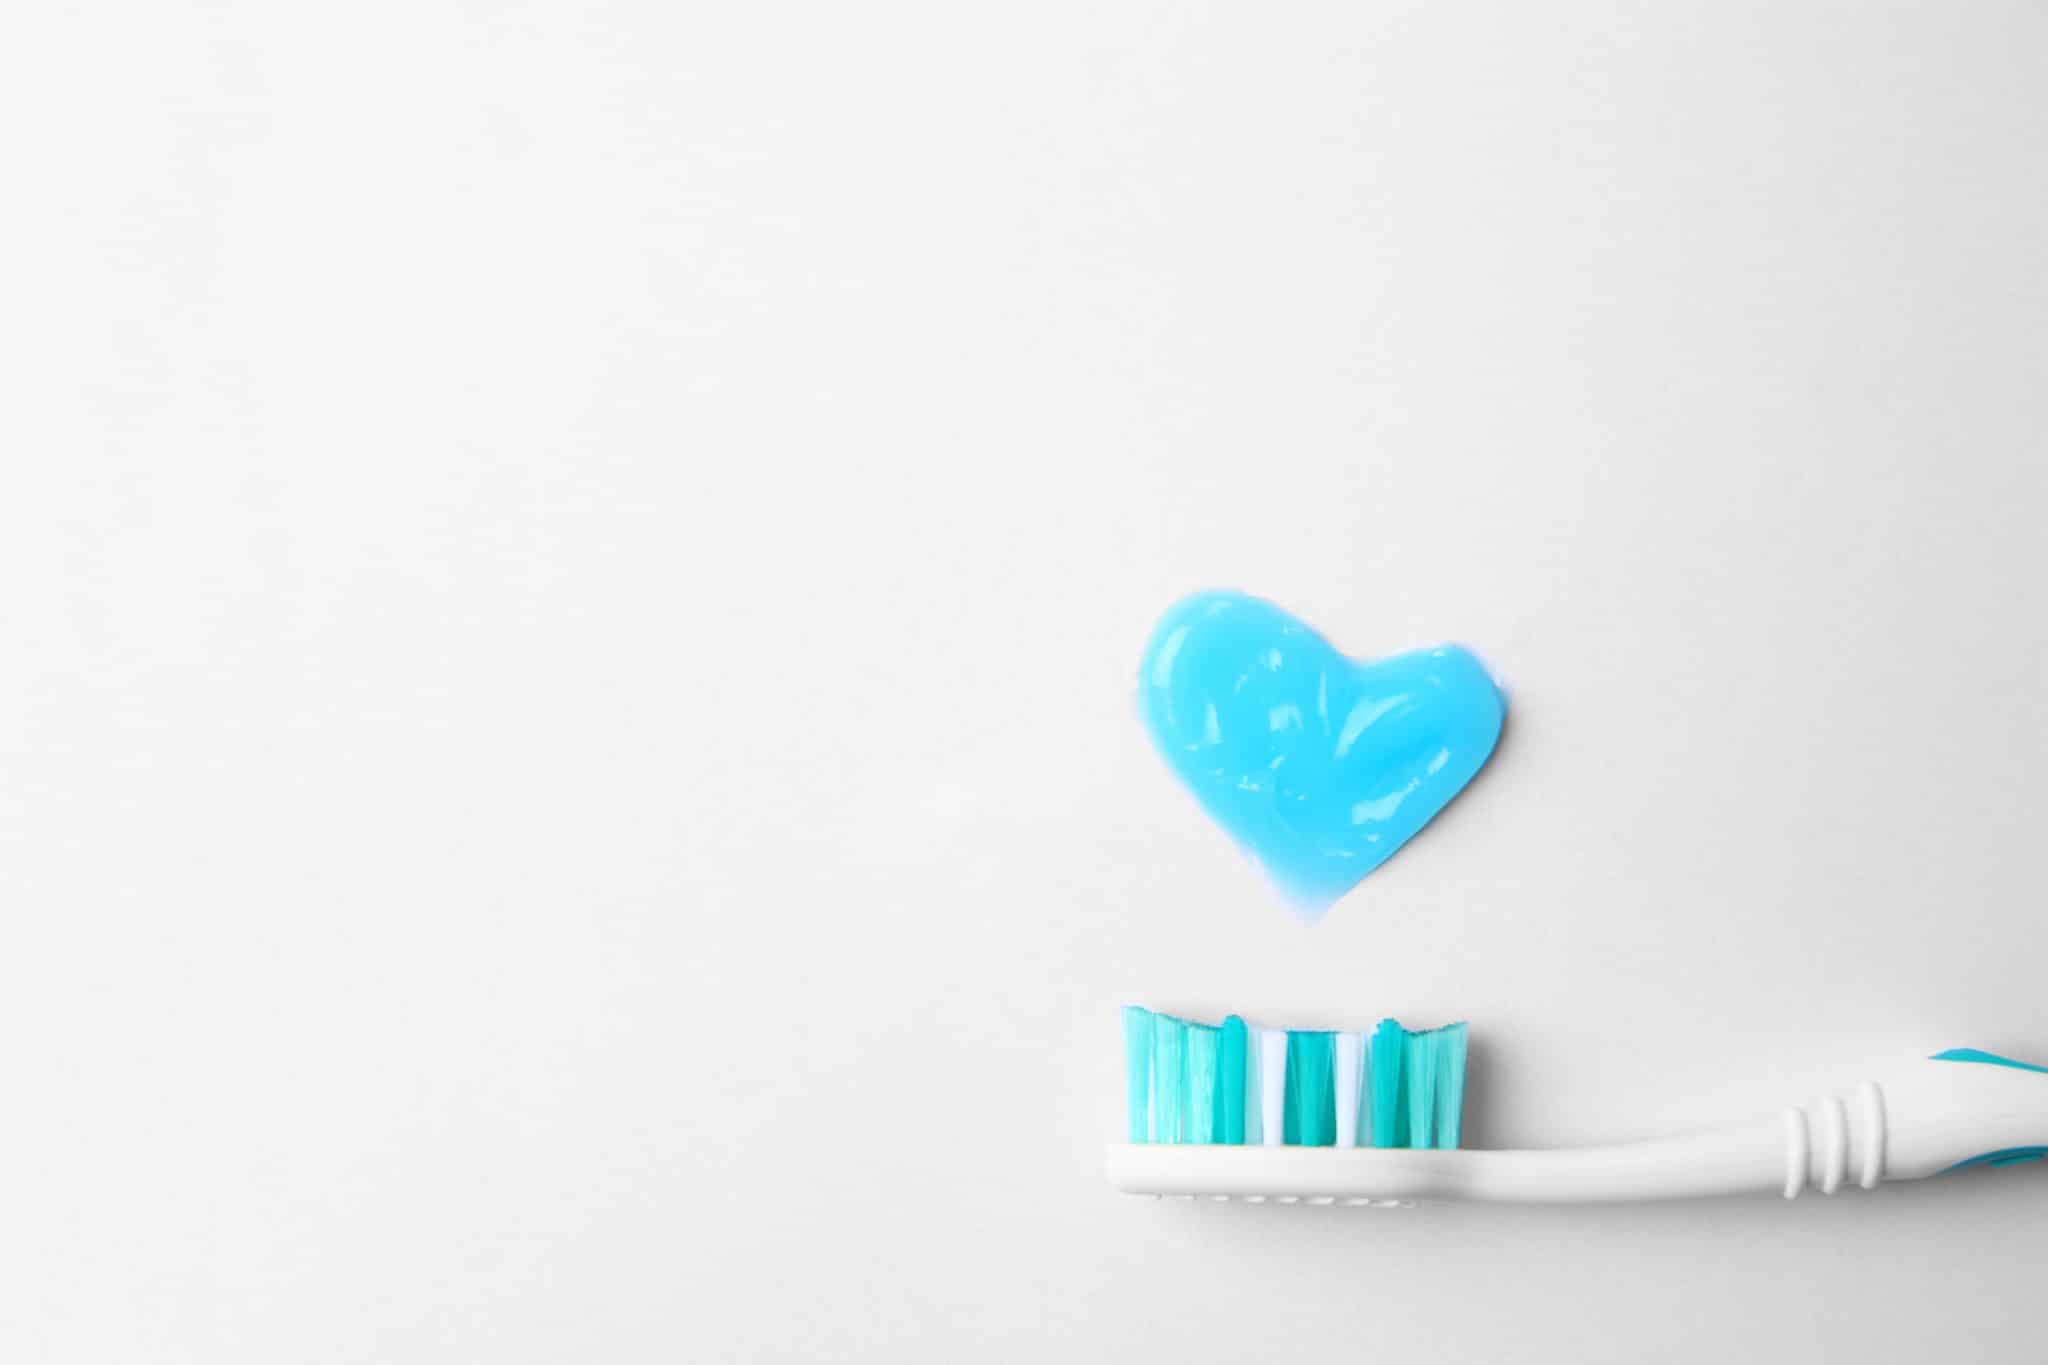 Herz aus Zahnpaste, darunter Ausschnitt einer Zahnbürste.